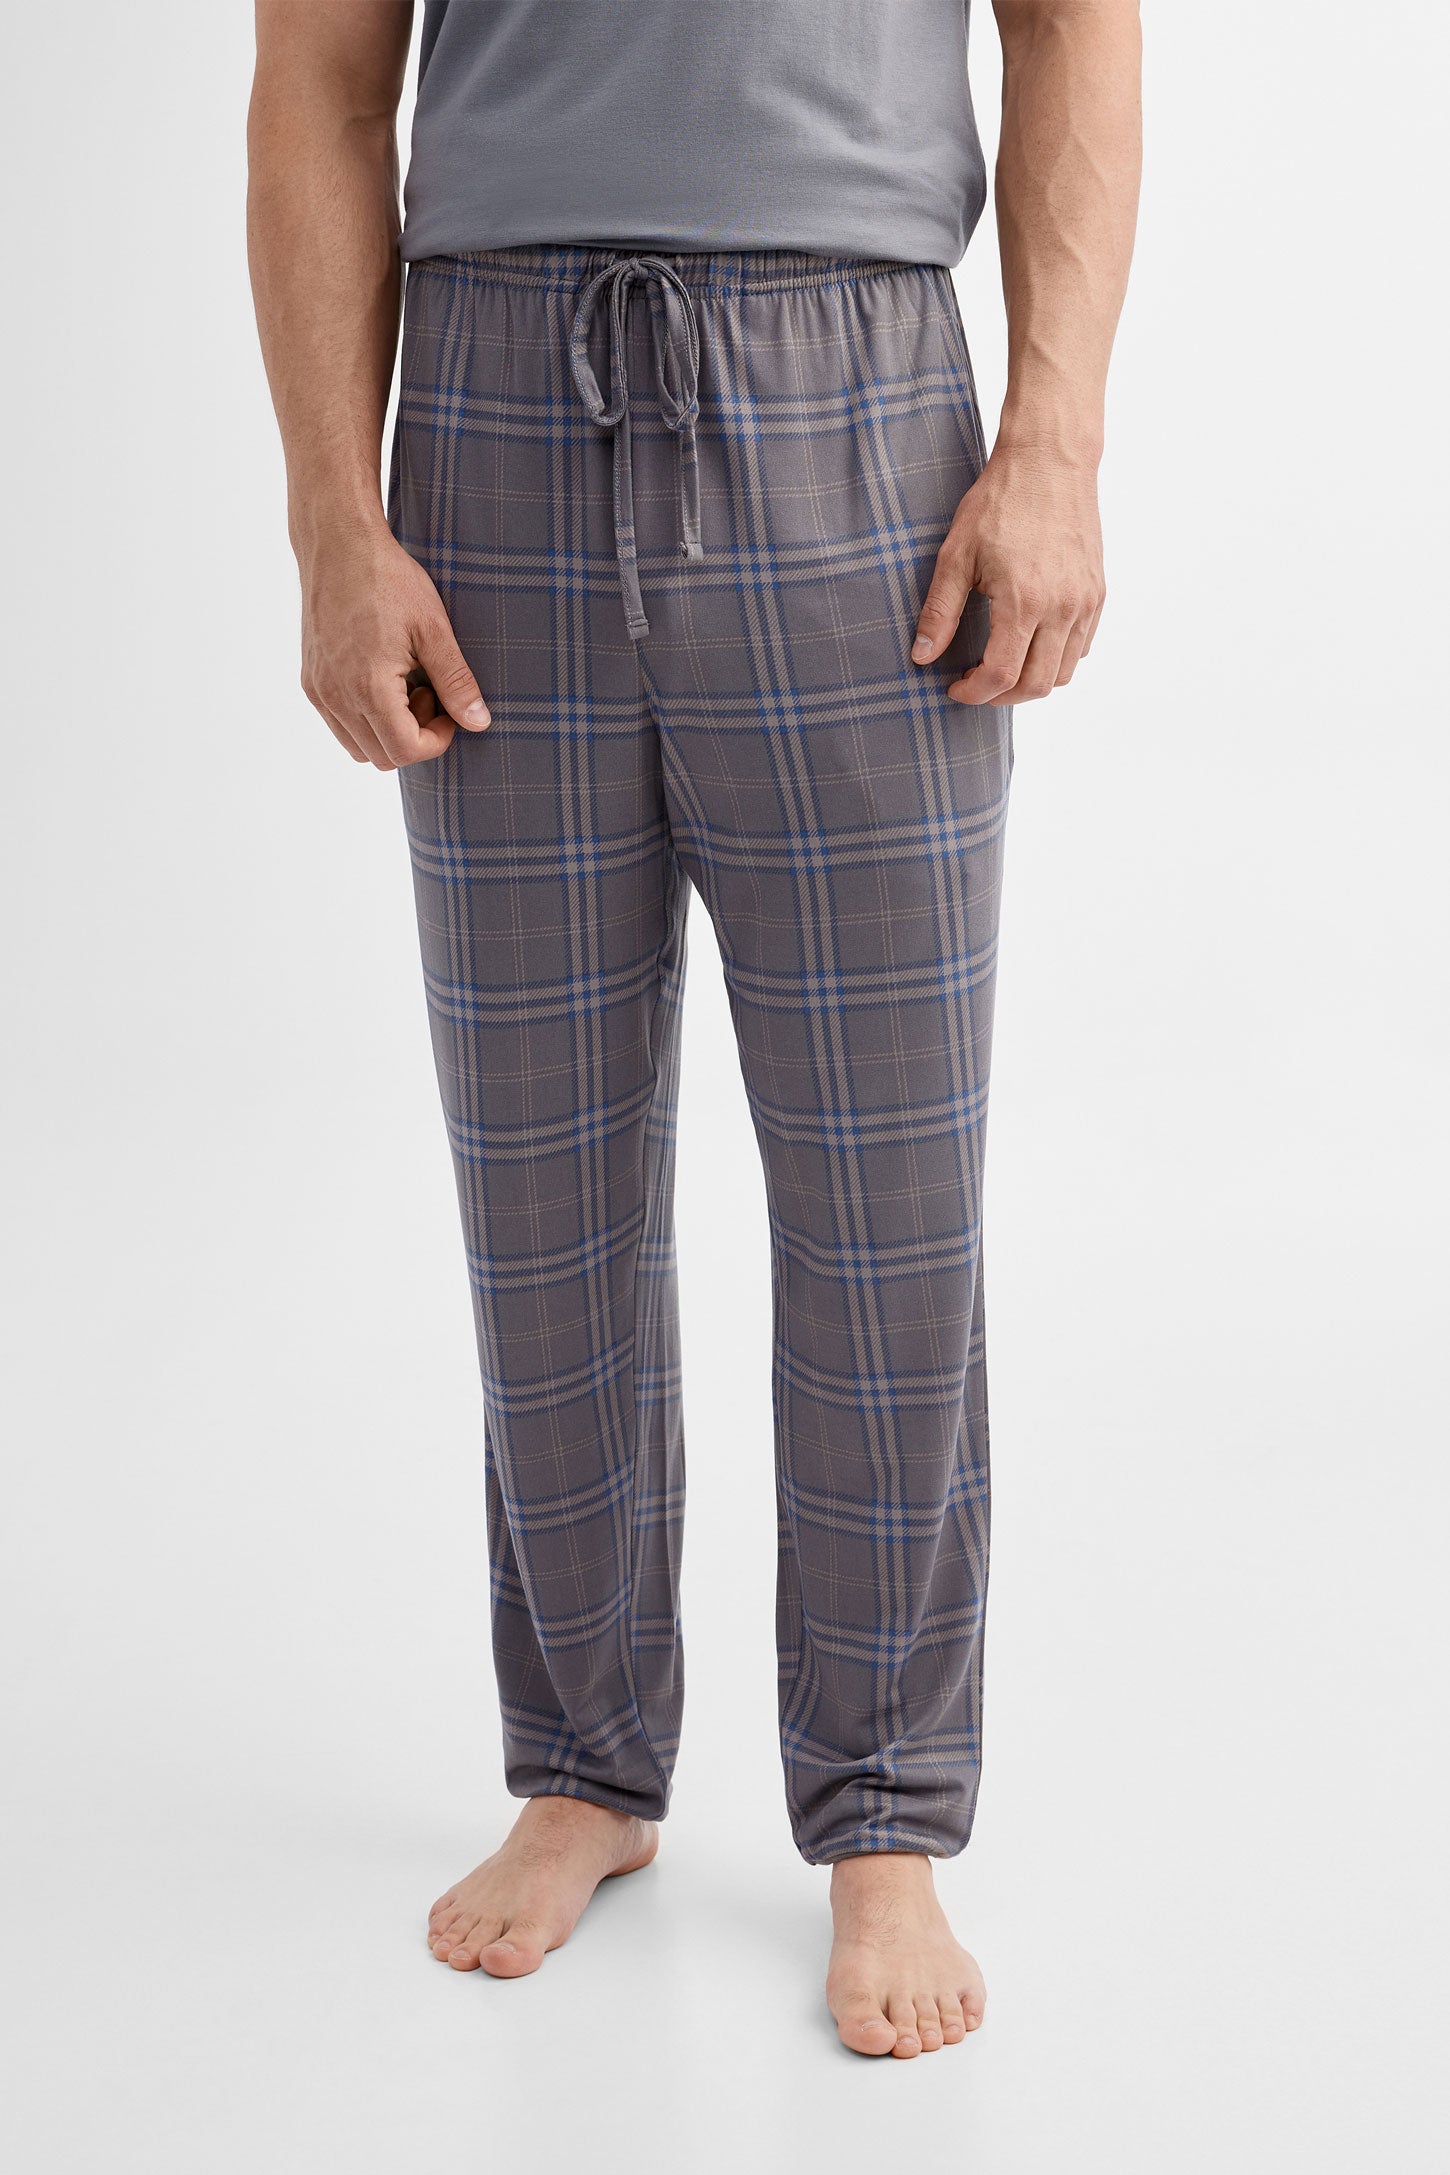 Duos futés, Pantalon pyjama en Moss, 2/50$ - Homme && CHARBON/MULTI